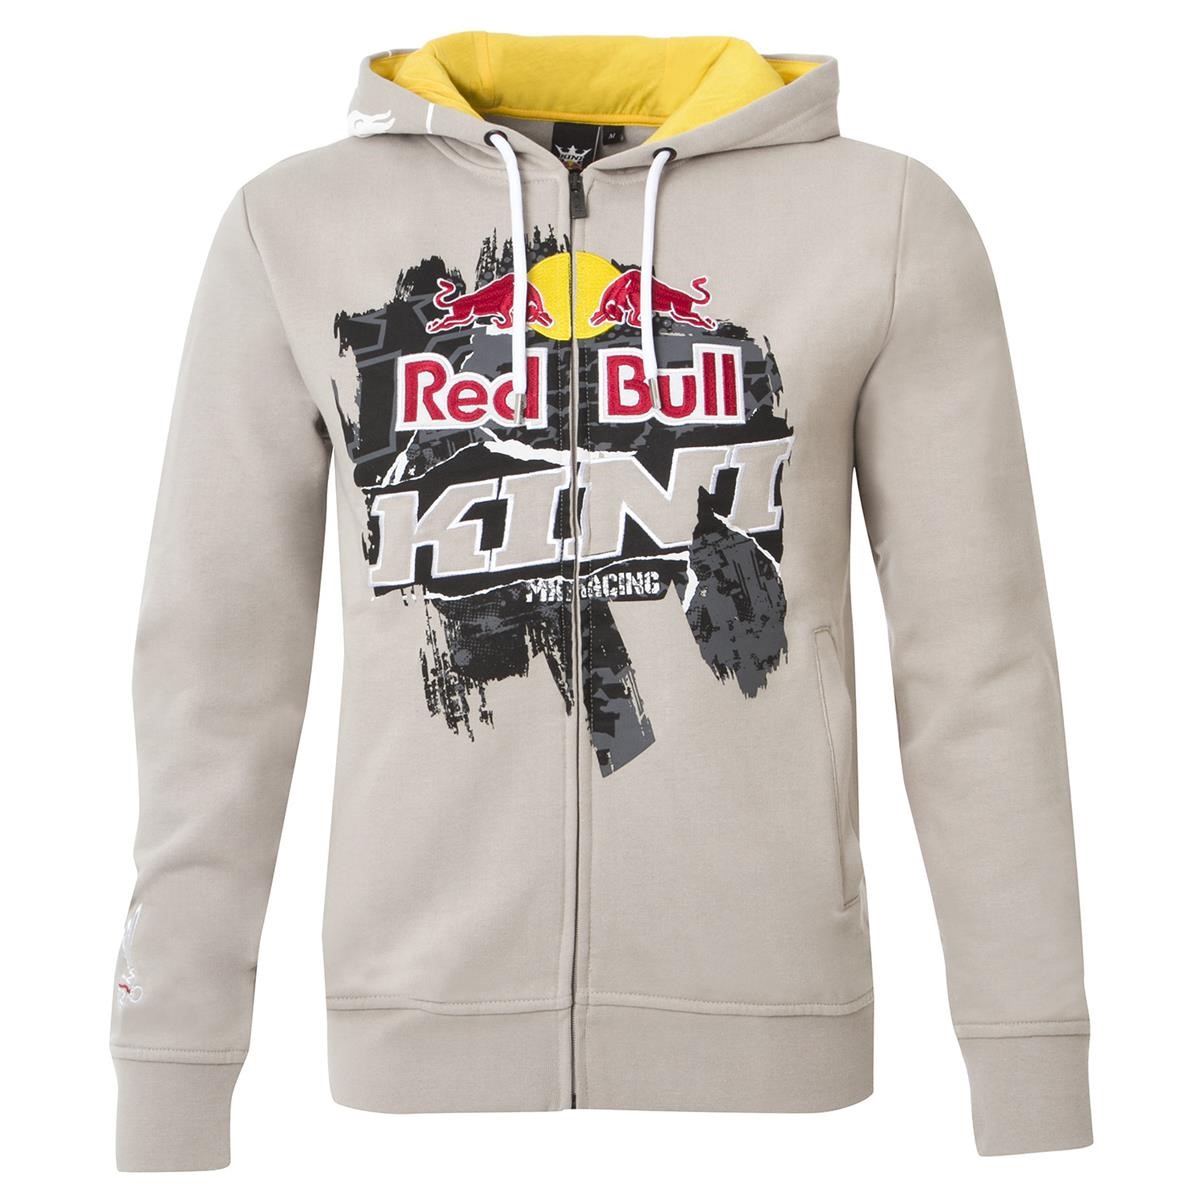 Kini Red Bull Zip Hoody Collage Grey